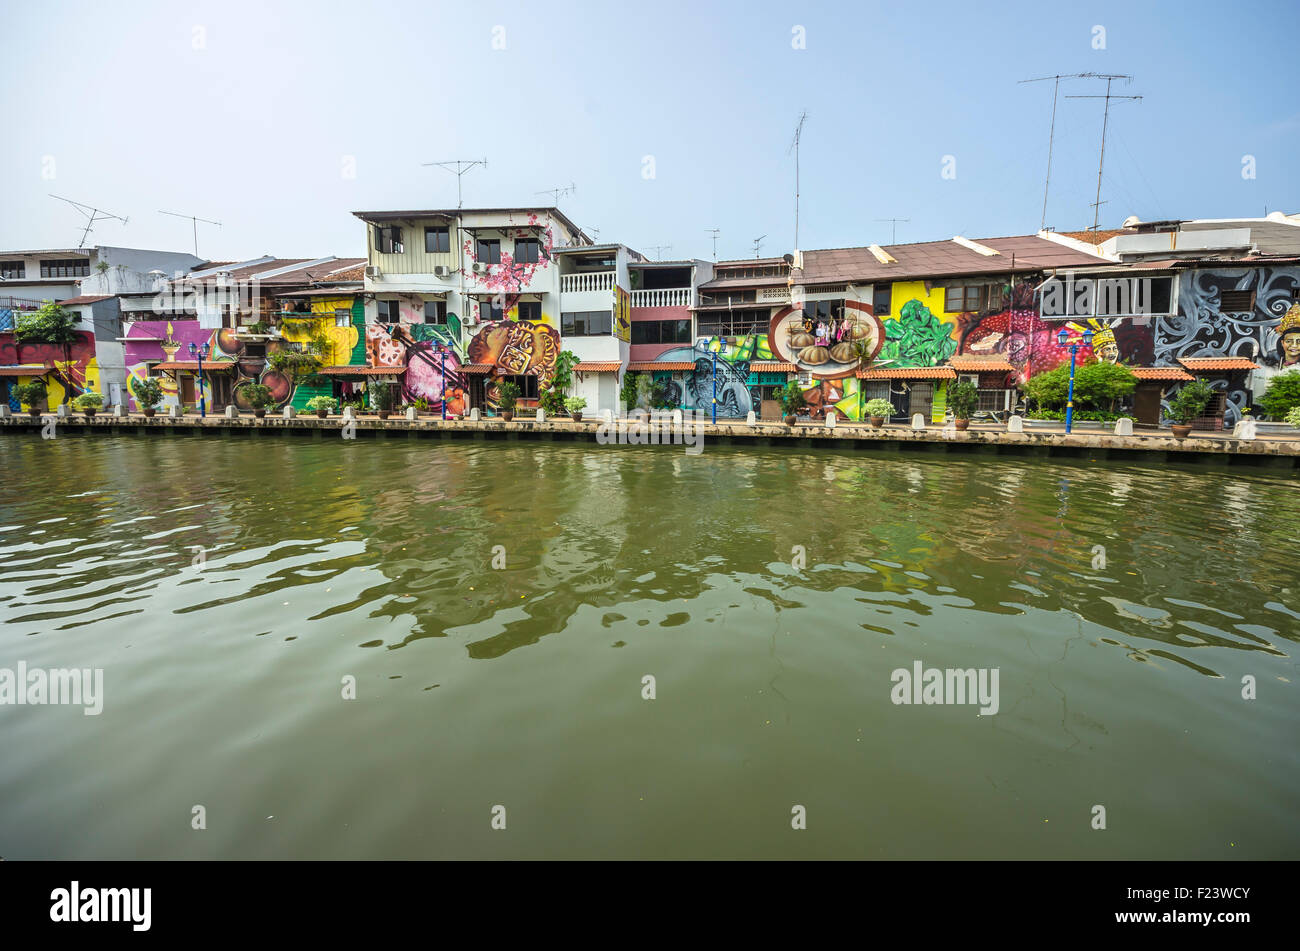 Façades peintes de couleurs vives le long de la rivière Malacca, district de Kampung Bakar Batu, Malacca, ou Melaka, Malaisie Banque D'Images